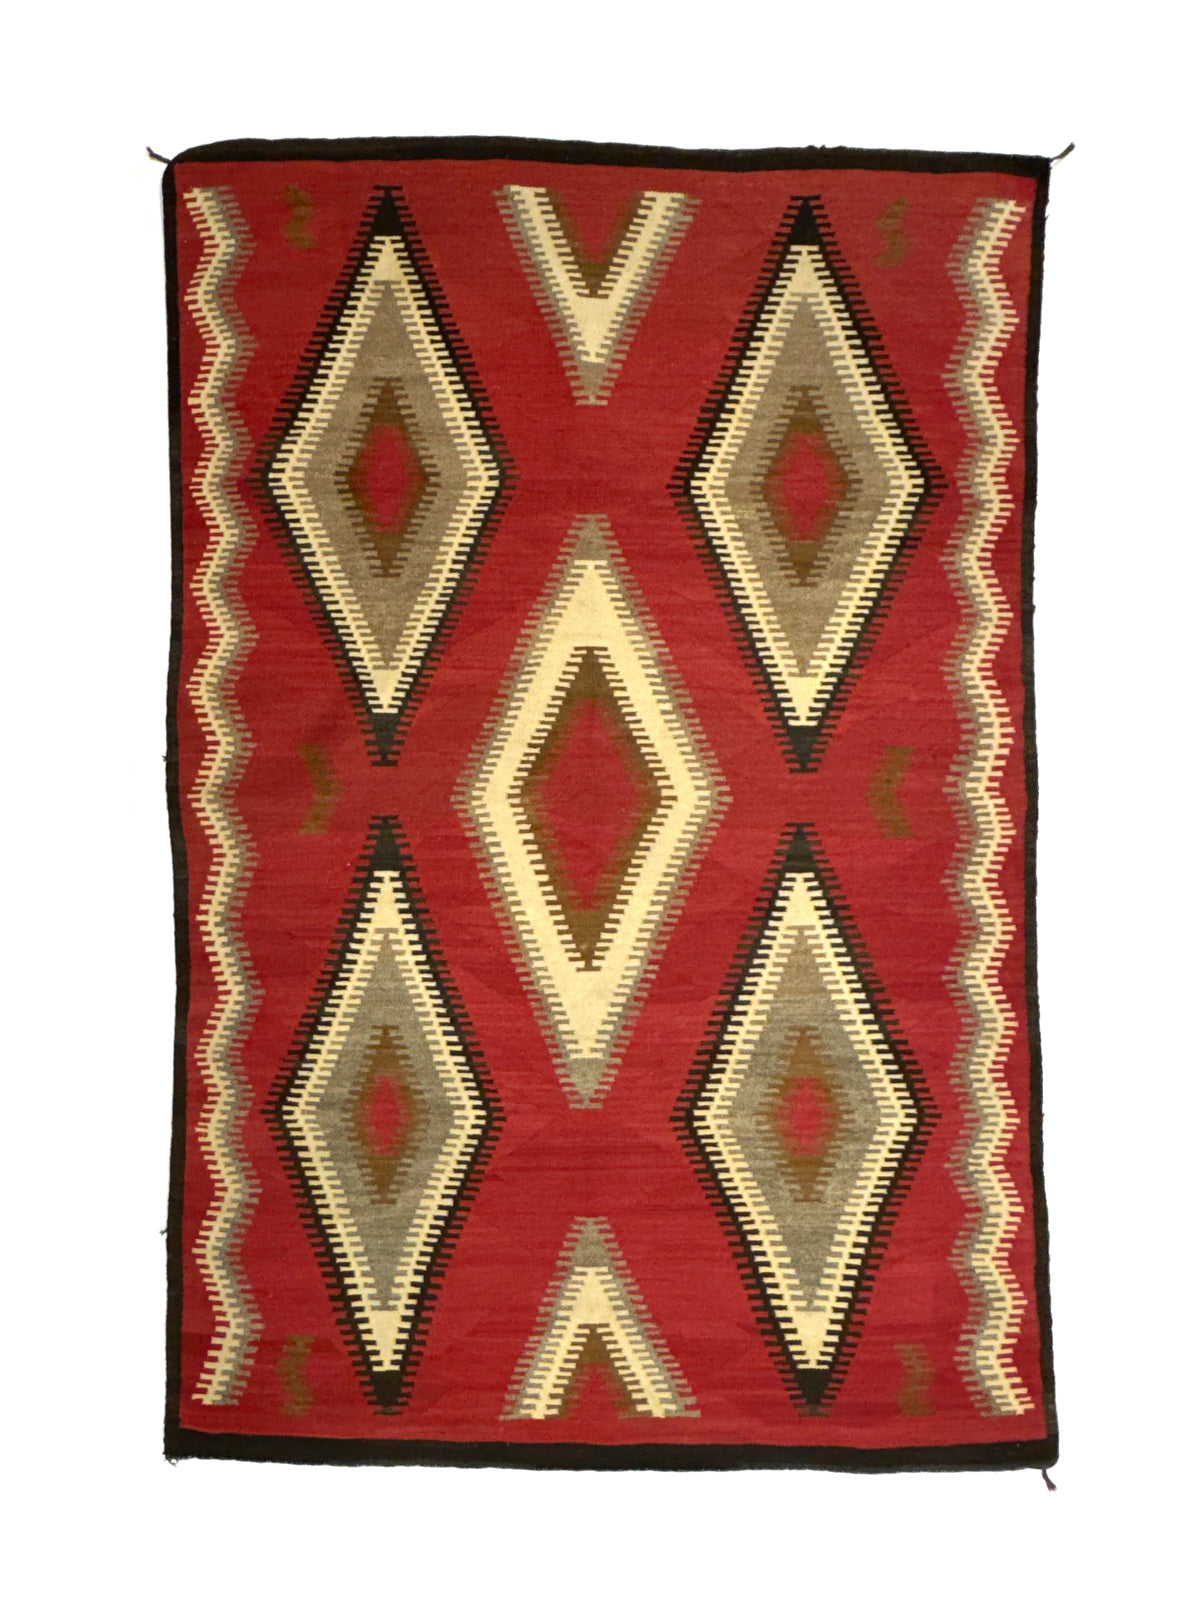 Navajo Ganado Rug c. 1920s, 85" x 57"